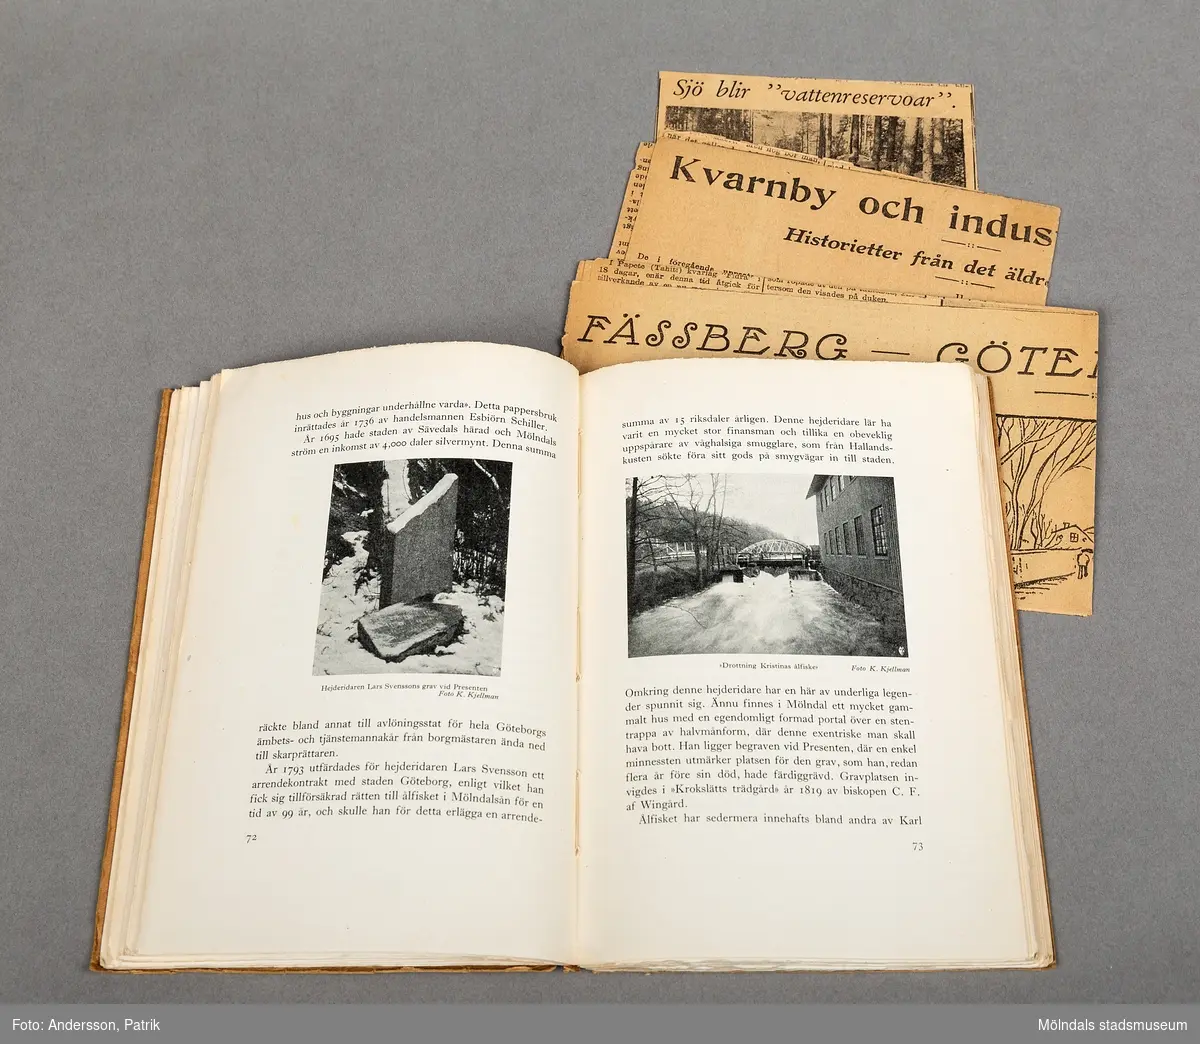 En minnesskrift om Fässbergs socken och Mölndals Kvarnby. Skriften är i bokformat med mjuk pärm. Utsiadan är av brun kartong och texten är tryckt med svarta tjocka bokstäver. 
Det finns en tecknad bild av en kvarn vid forsen i Kvarnbyn.